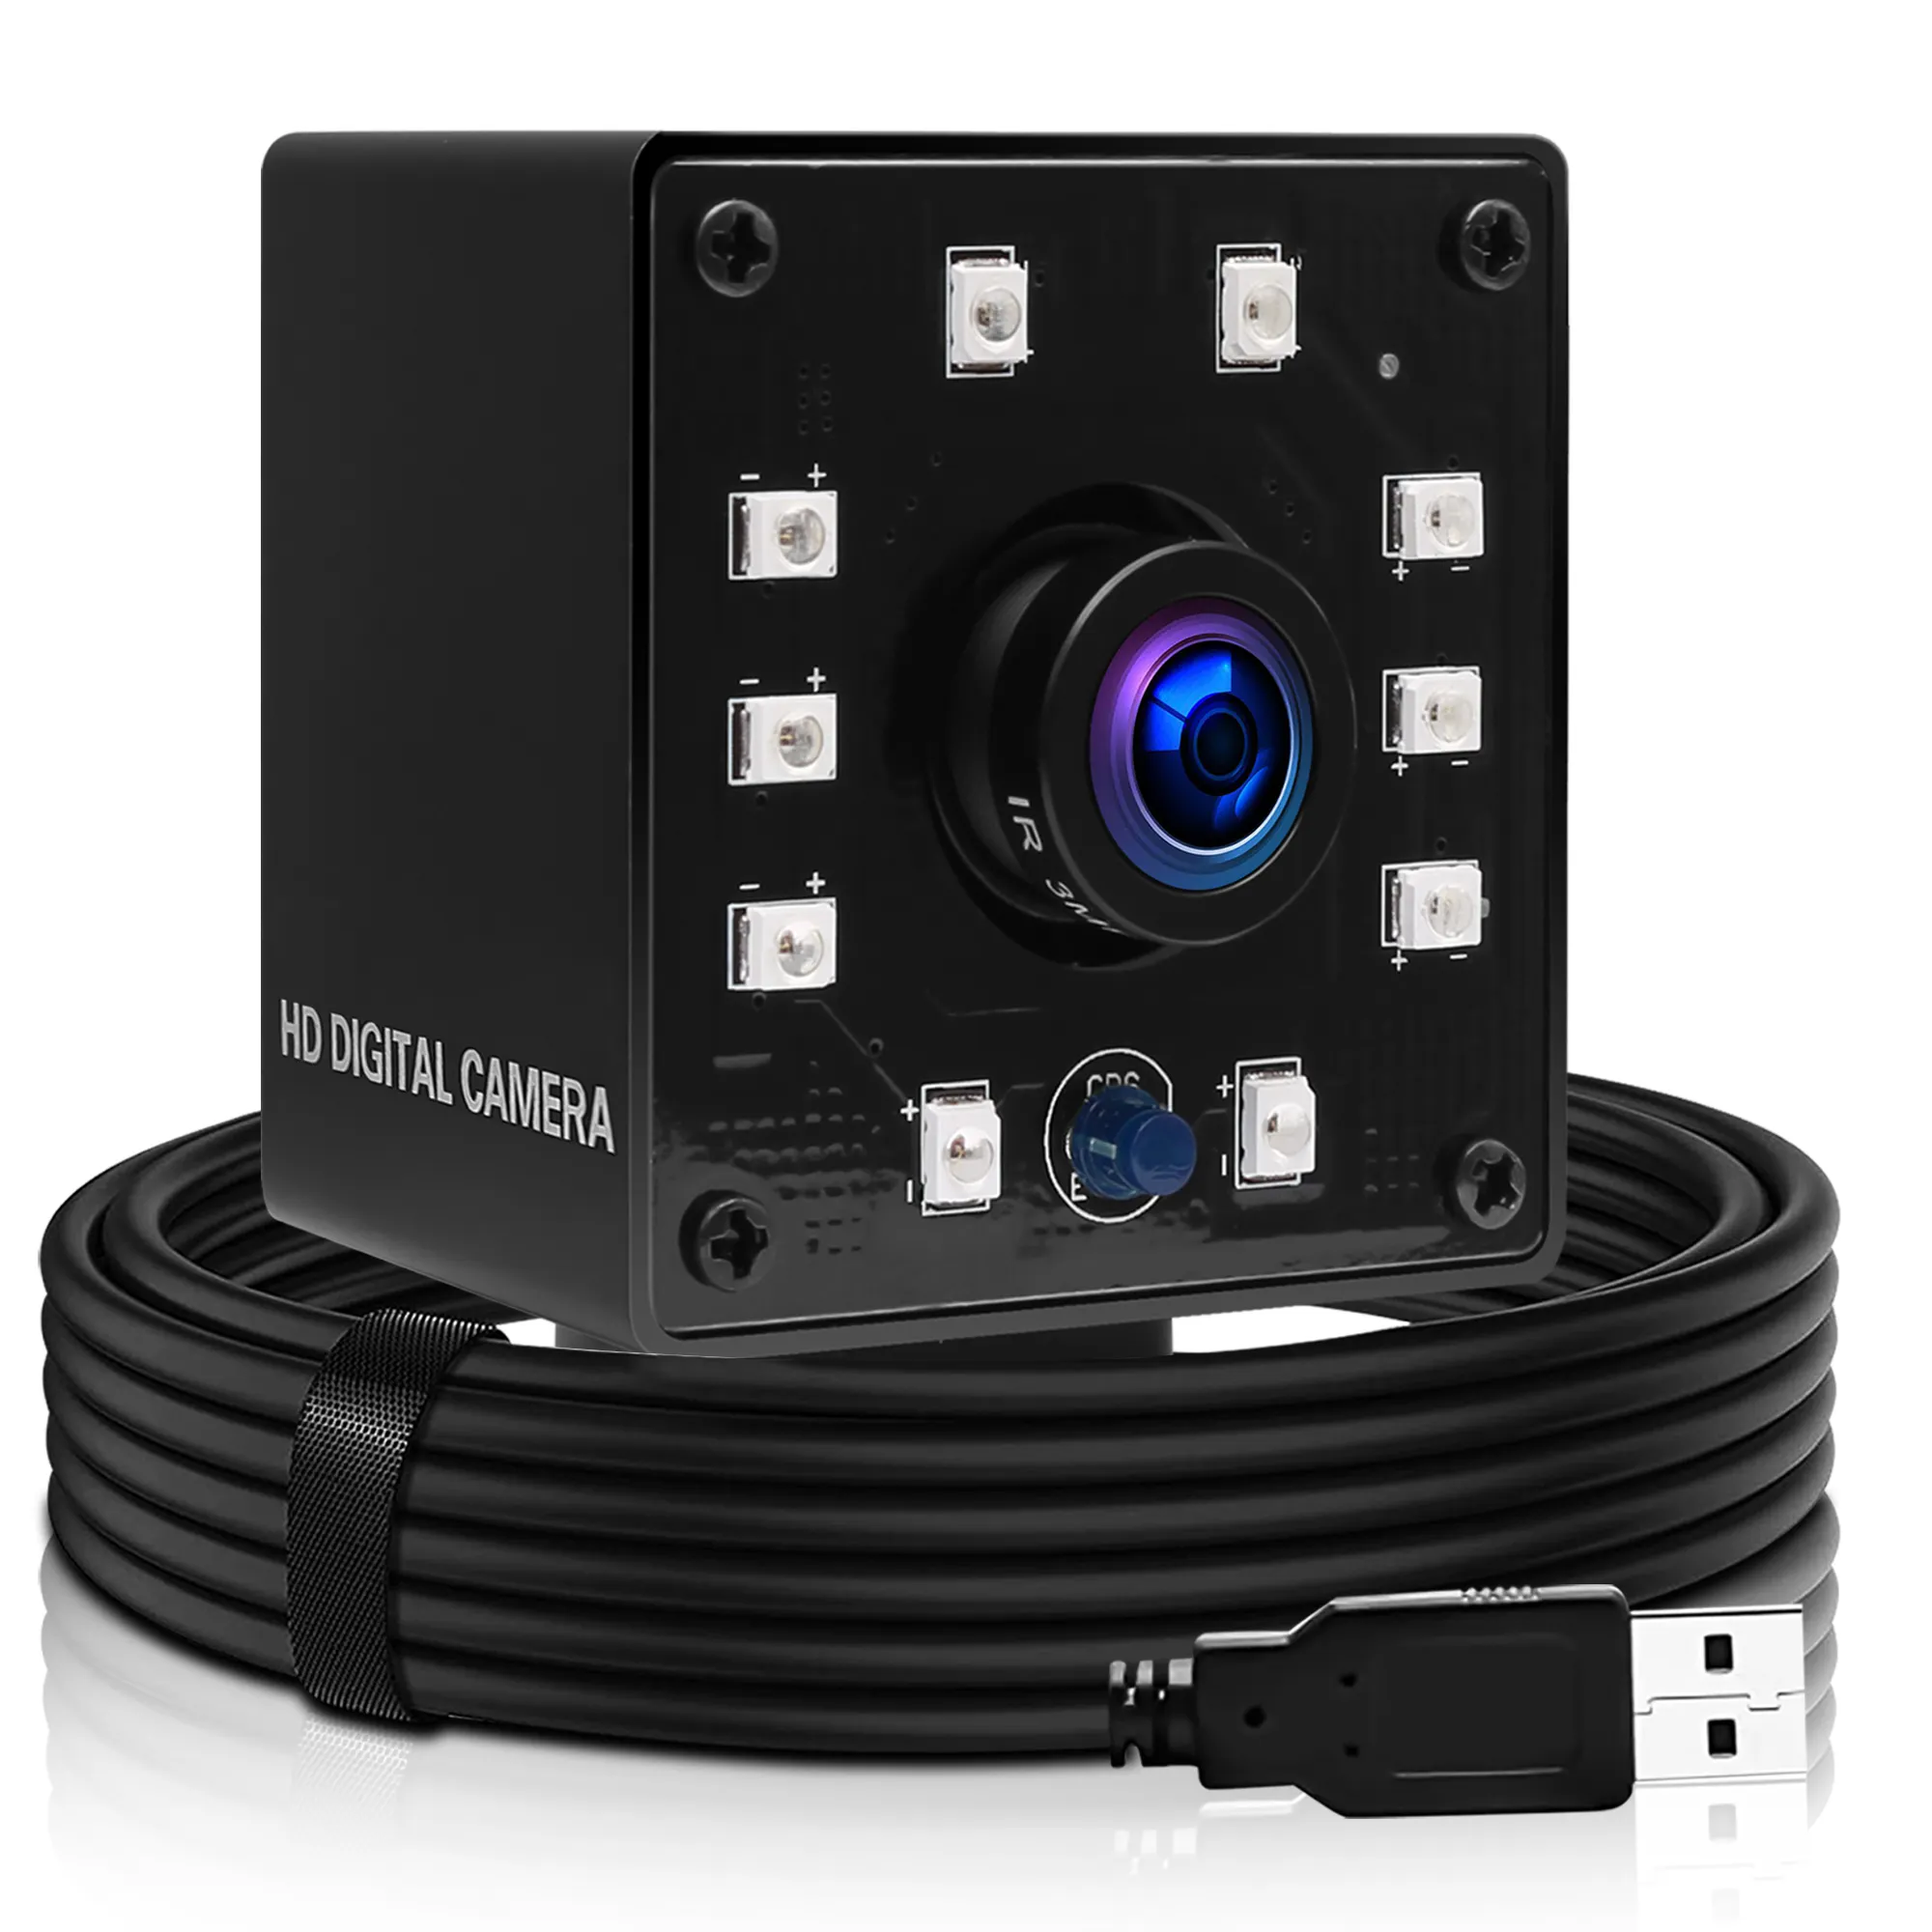 كاميرا مراقبة عالية السرعة 1080P كاملة الدقة 30 إطار في الثانية/60 إطار في الثانية/100 إطار في الثانية CCTV Security Usb 2.0 منفذ UVC كاميرا رؤية ليلية بالأشعة تحت الحمراء صغيرة